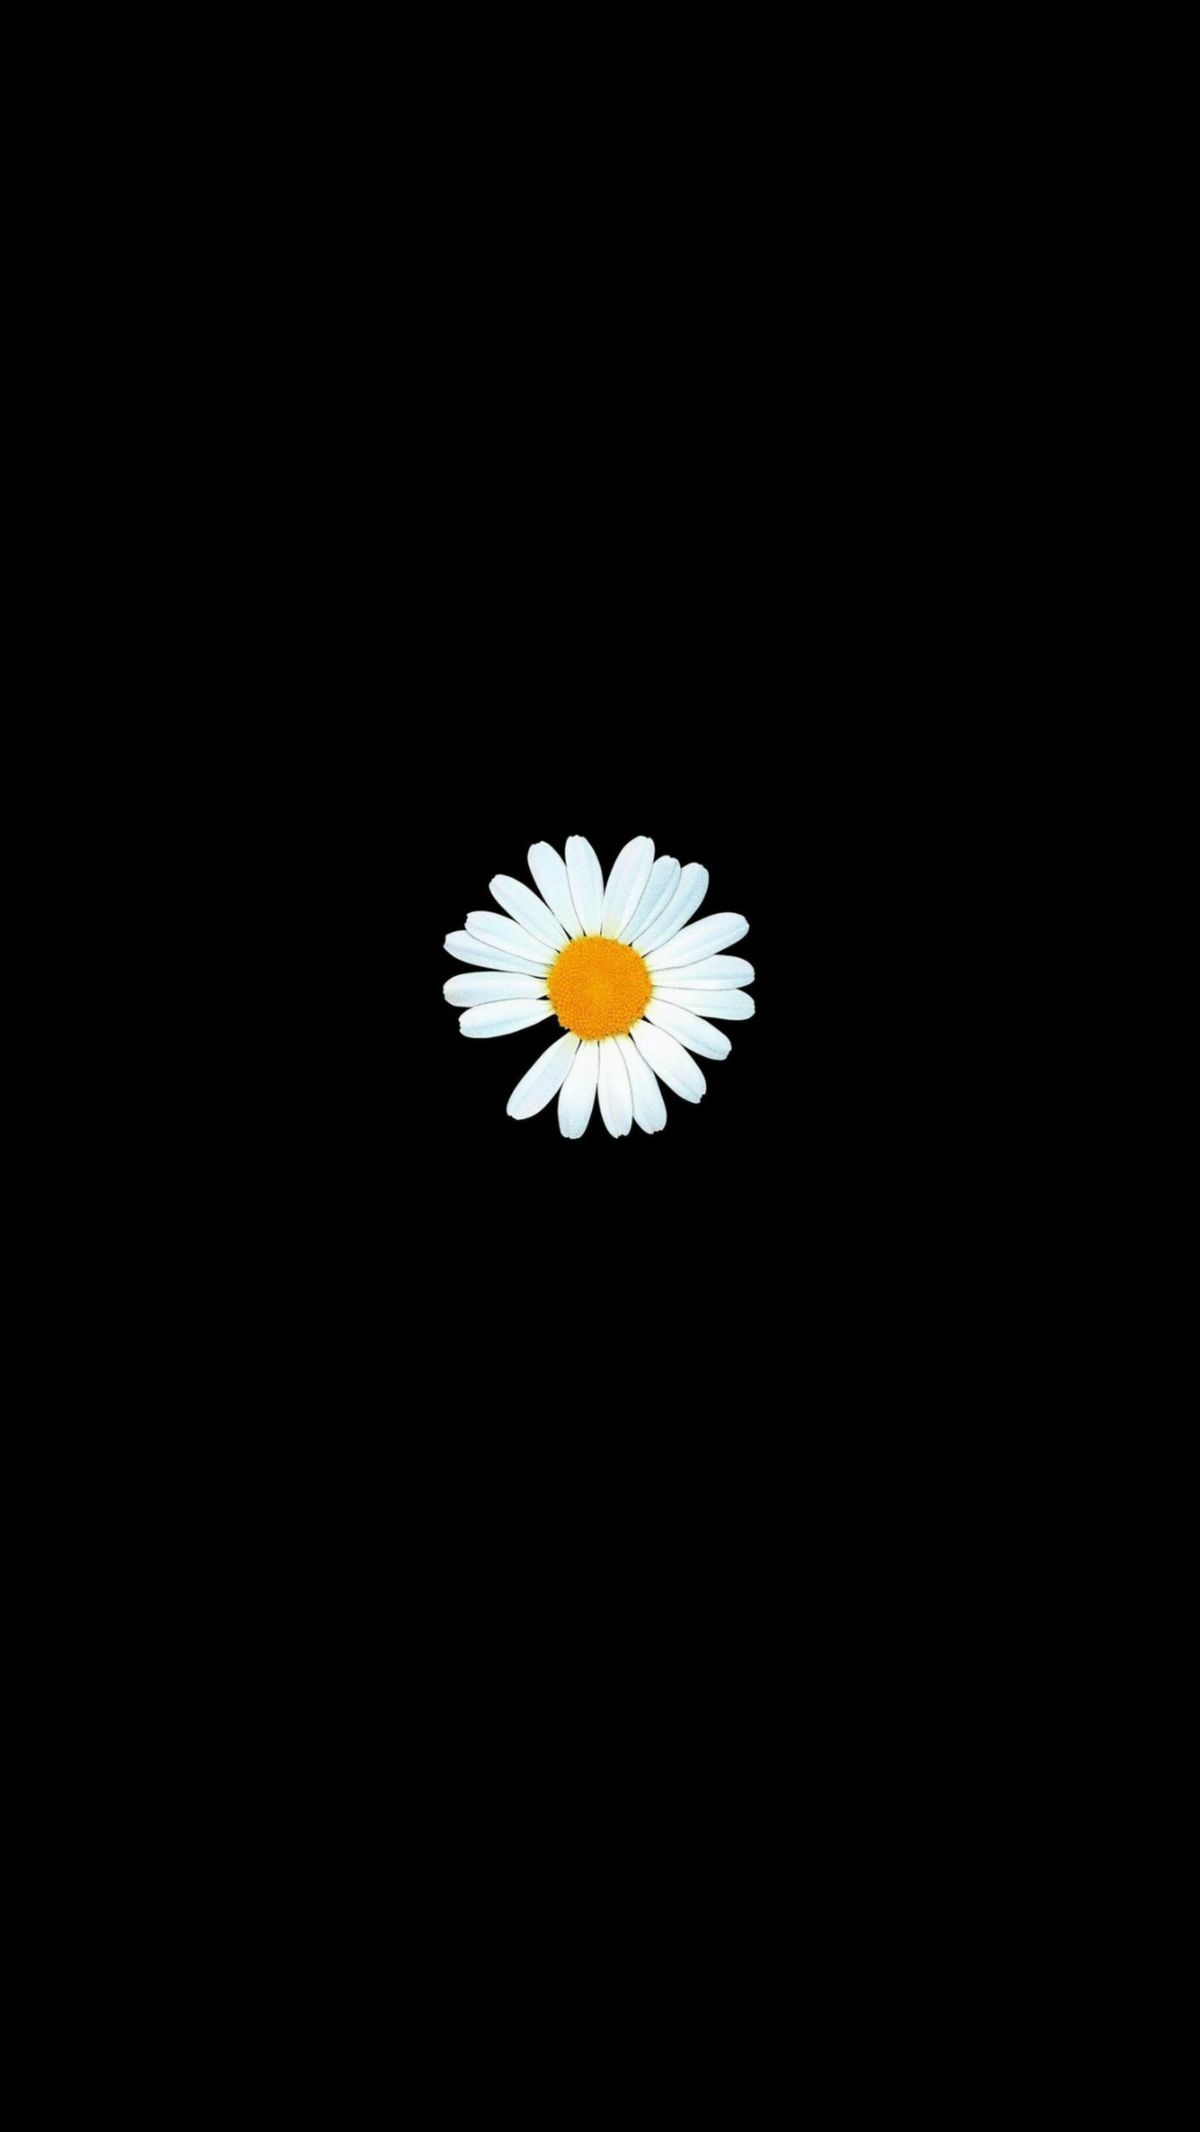 Hình hoa cúc trắng nền đen: Hãy để bức ảnh hoa cúc trắng nổi bật trên nền đen chụp lại sự trầm lắng, tĩnh lặng và thanh tao của vẻ đẹp tự nhiên này. Hình ảnh đẹp mắt này sẽ giúp bạn thư giãn sau một ngày làm việc căng thẳng.